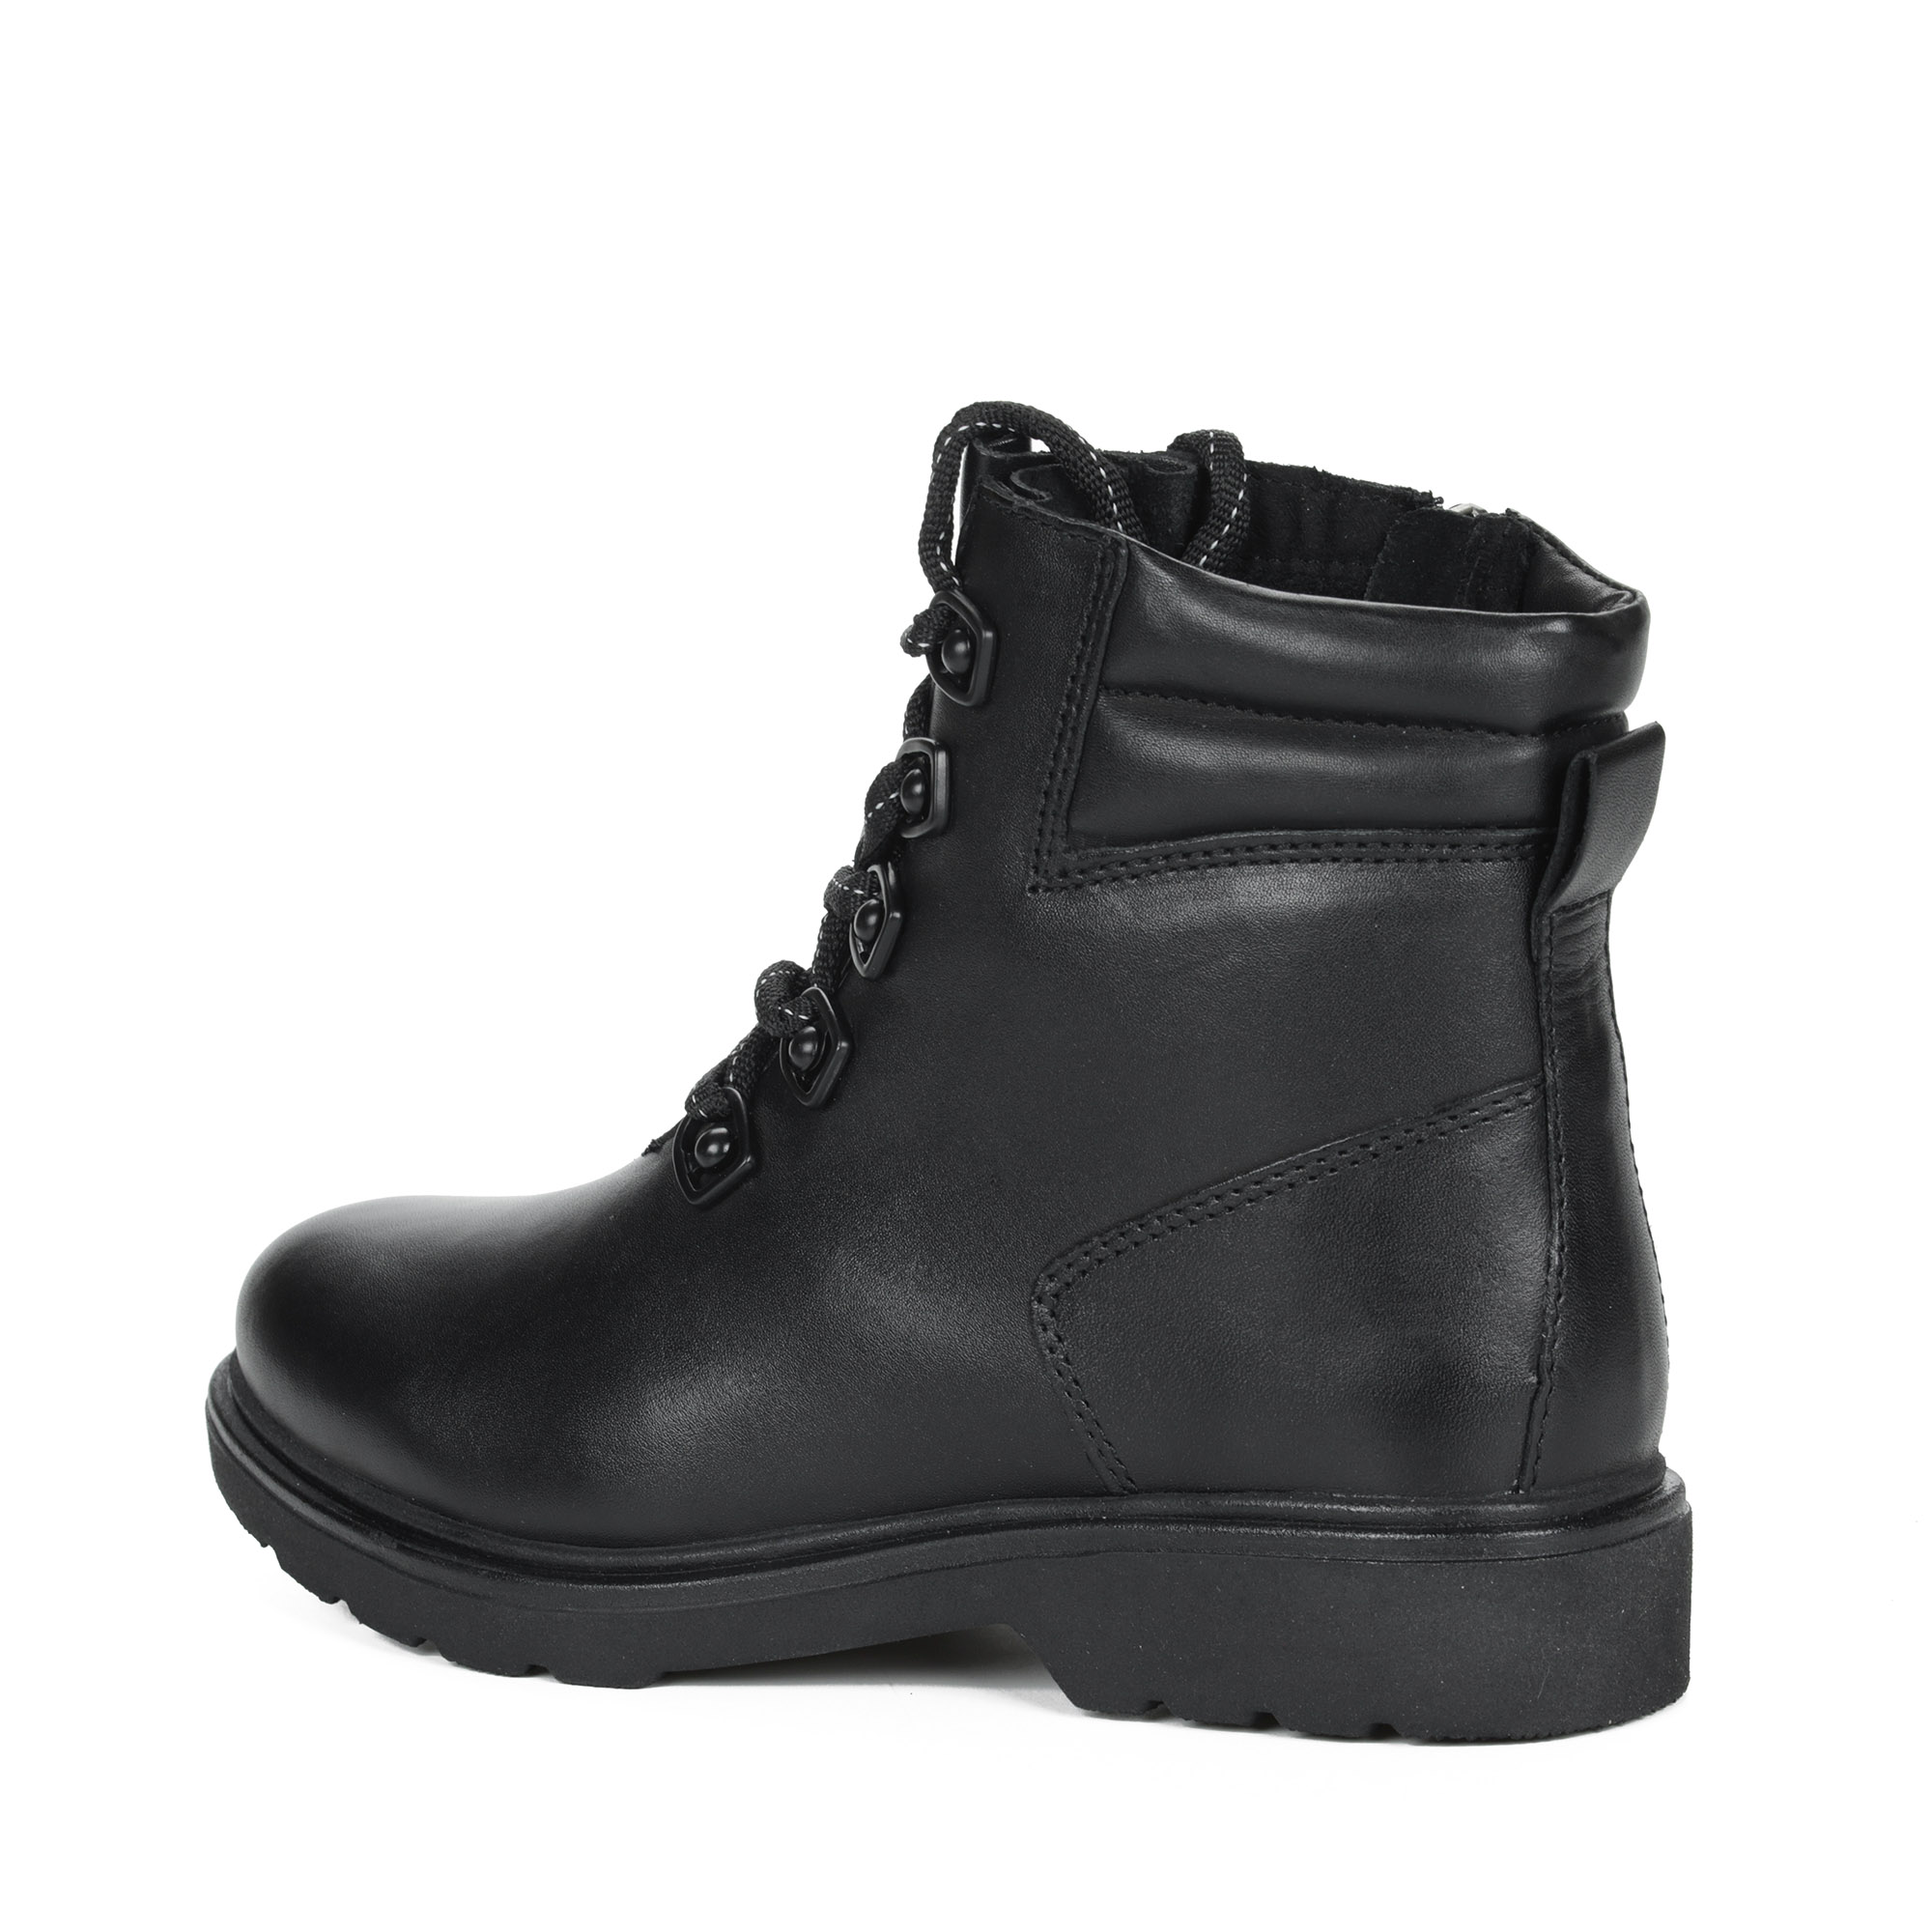 Черные ботинки на шнурках из кожи на подкладке из натуральной шерсти на тракторной подошве MARCO TOZZI PREMIO, размер 37, цвет черный - фото 5